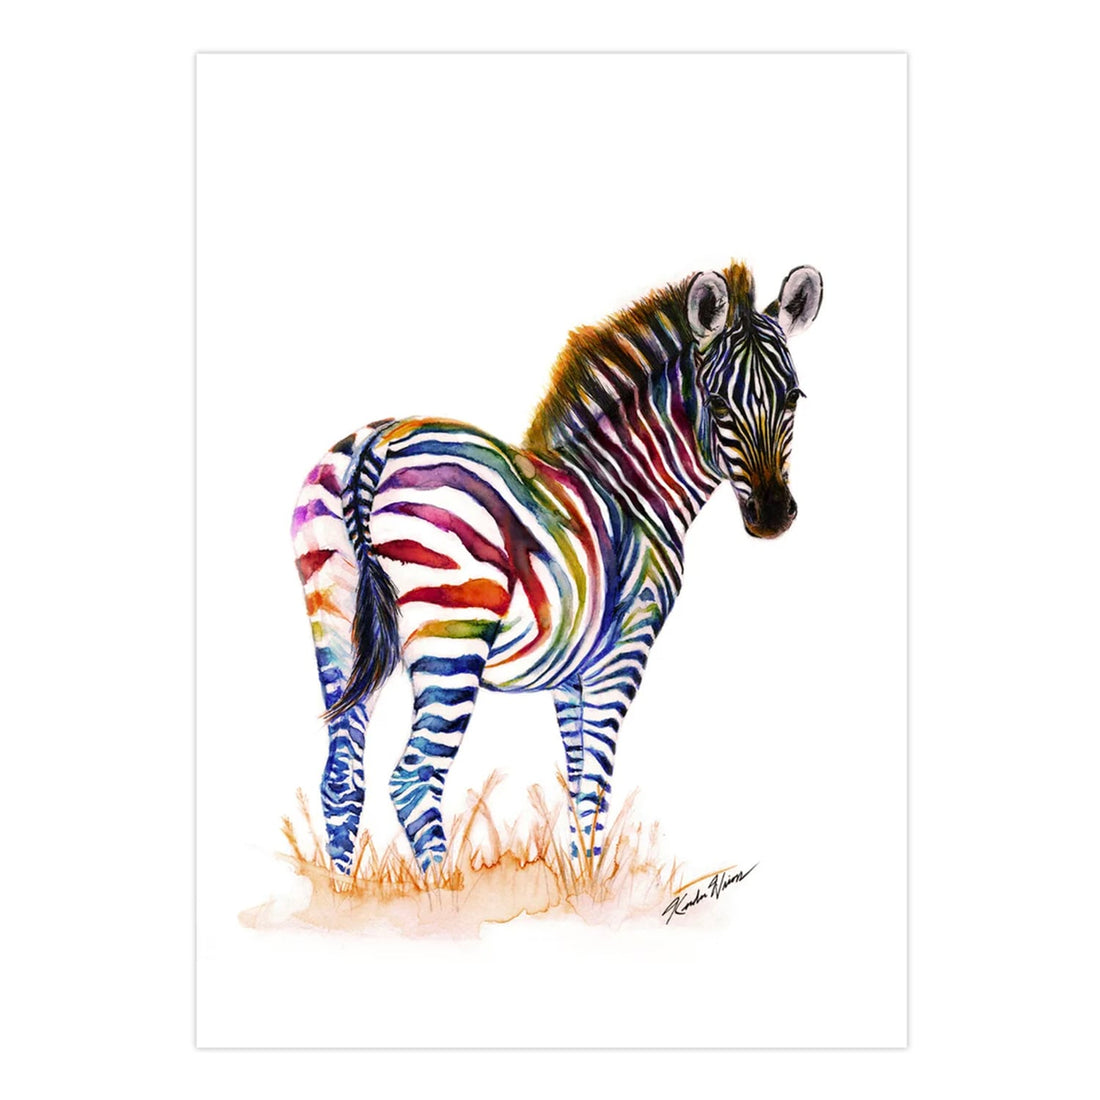 Rainbow Zebra